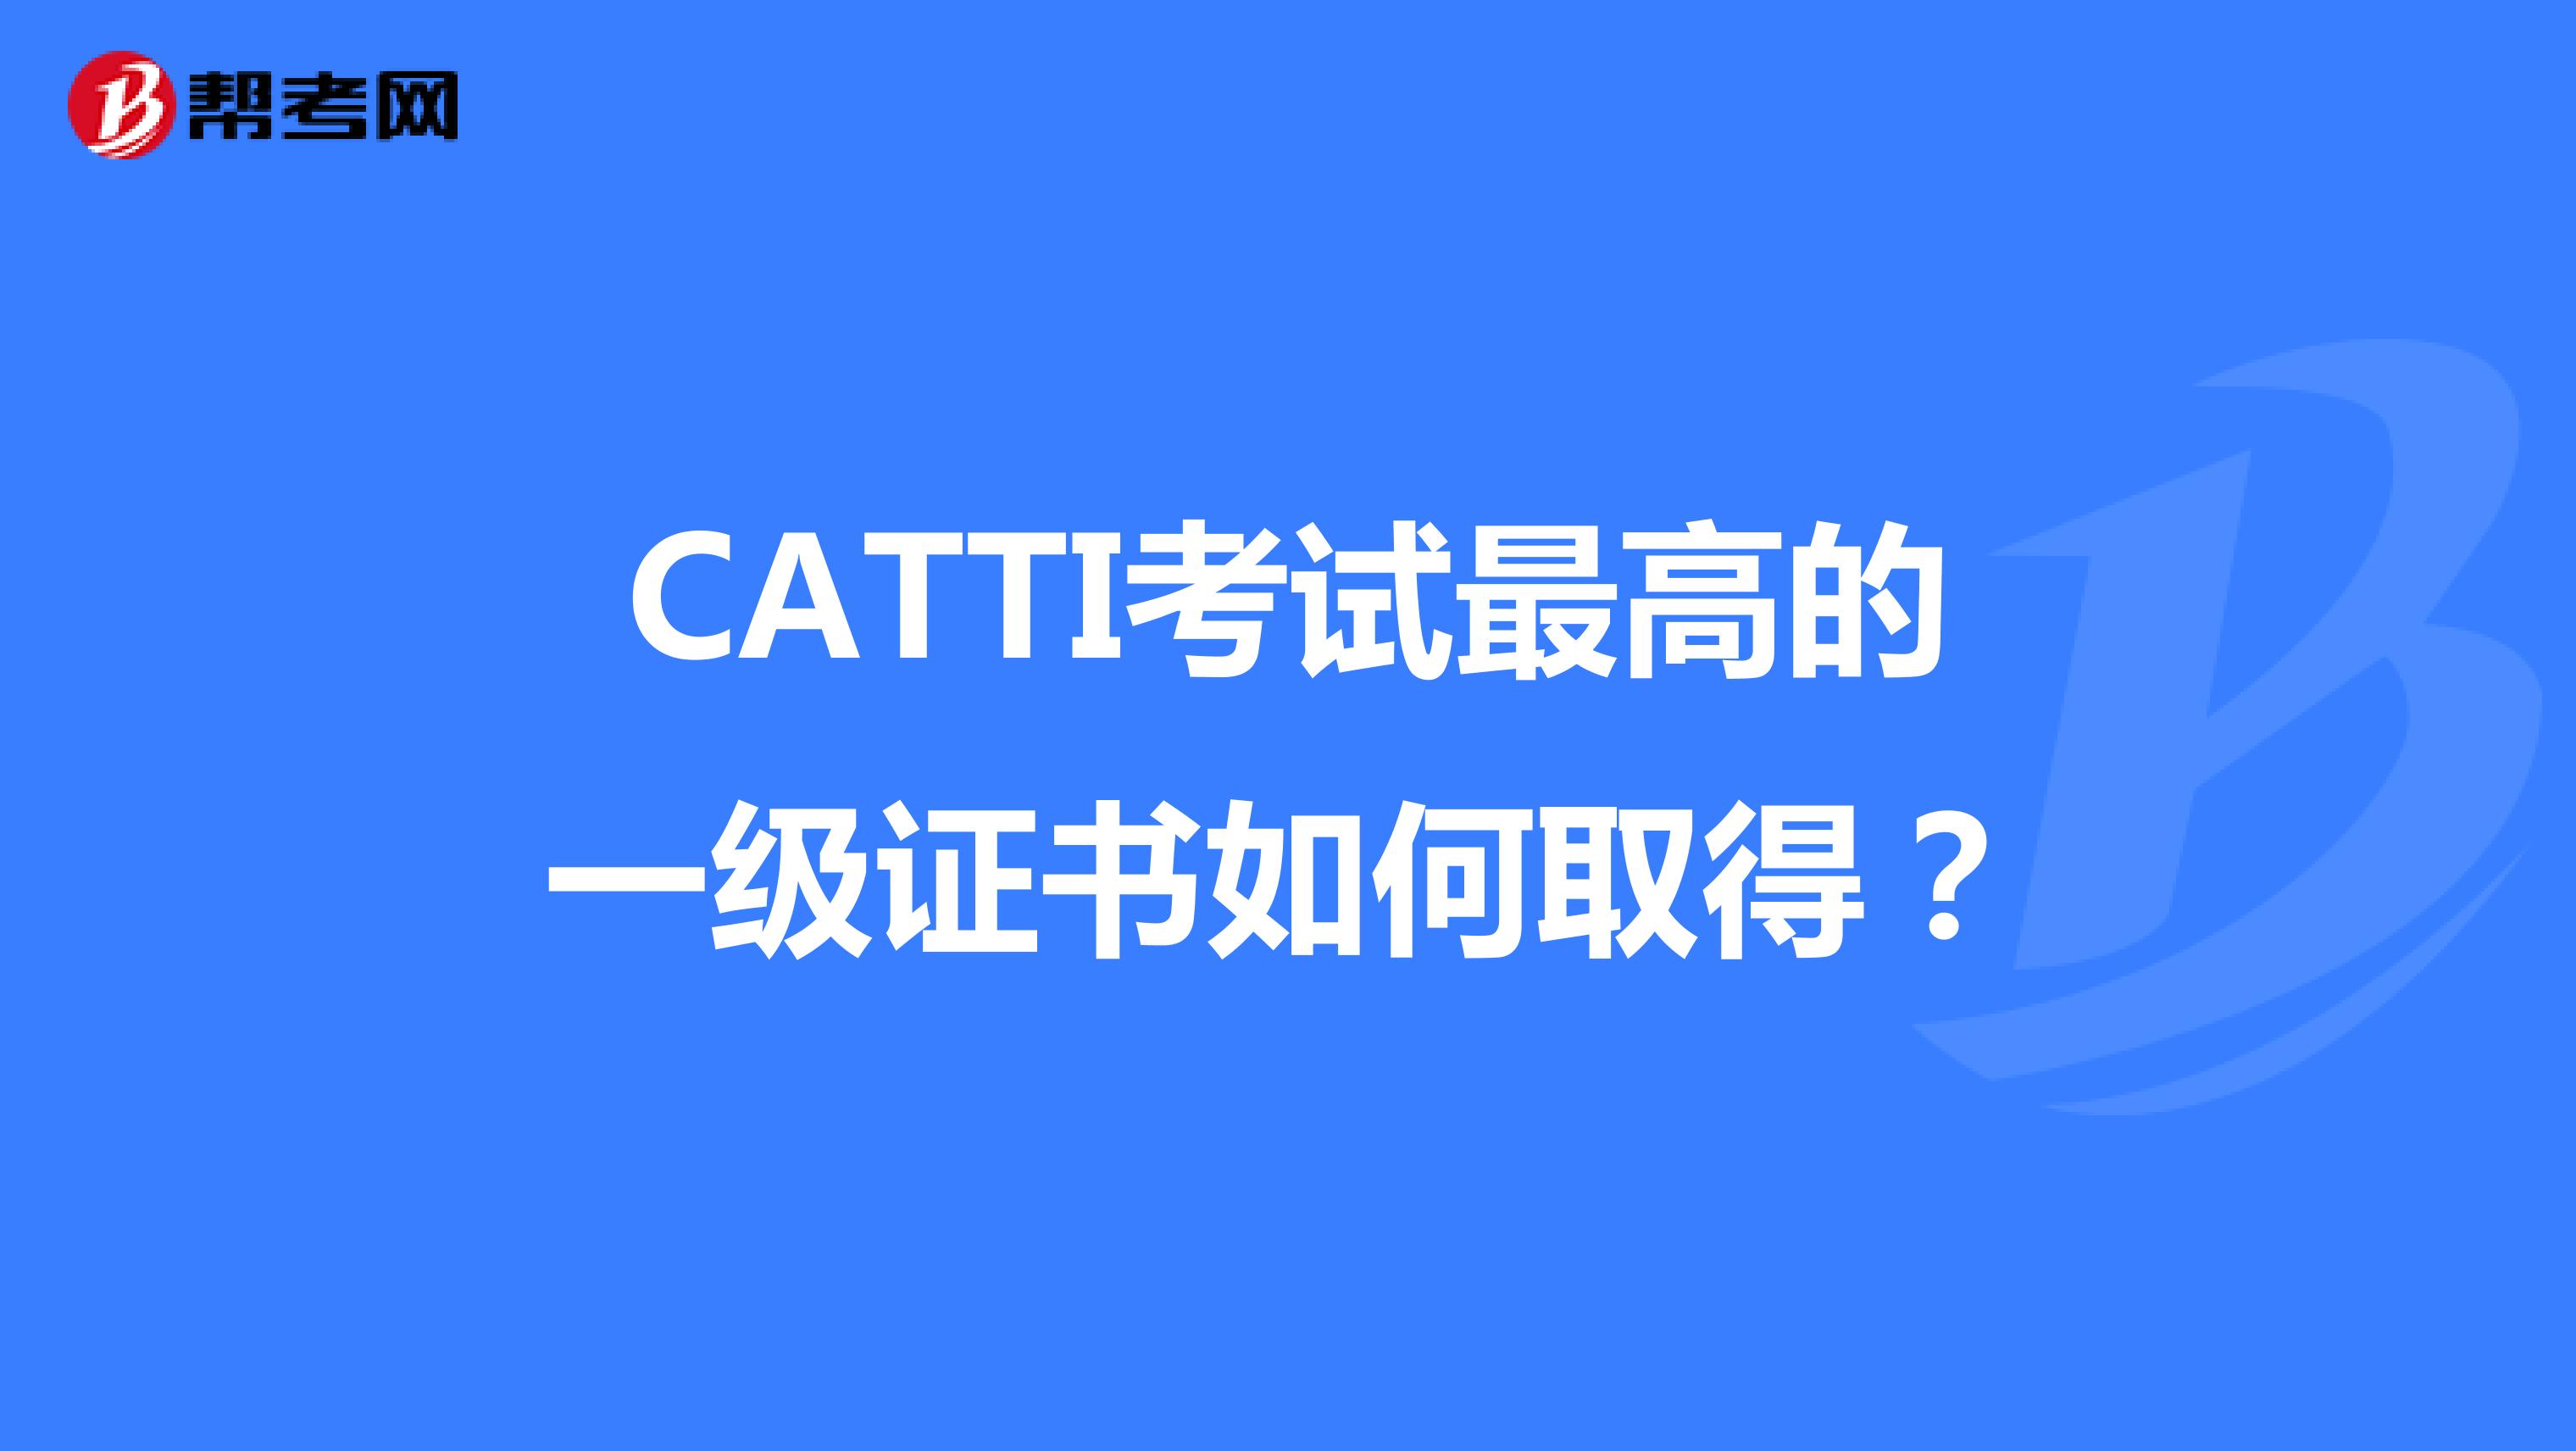 CATTI考试最高的一级证书如何取得？